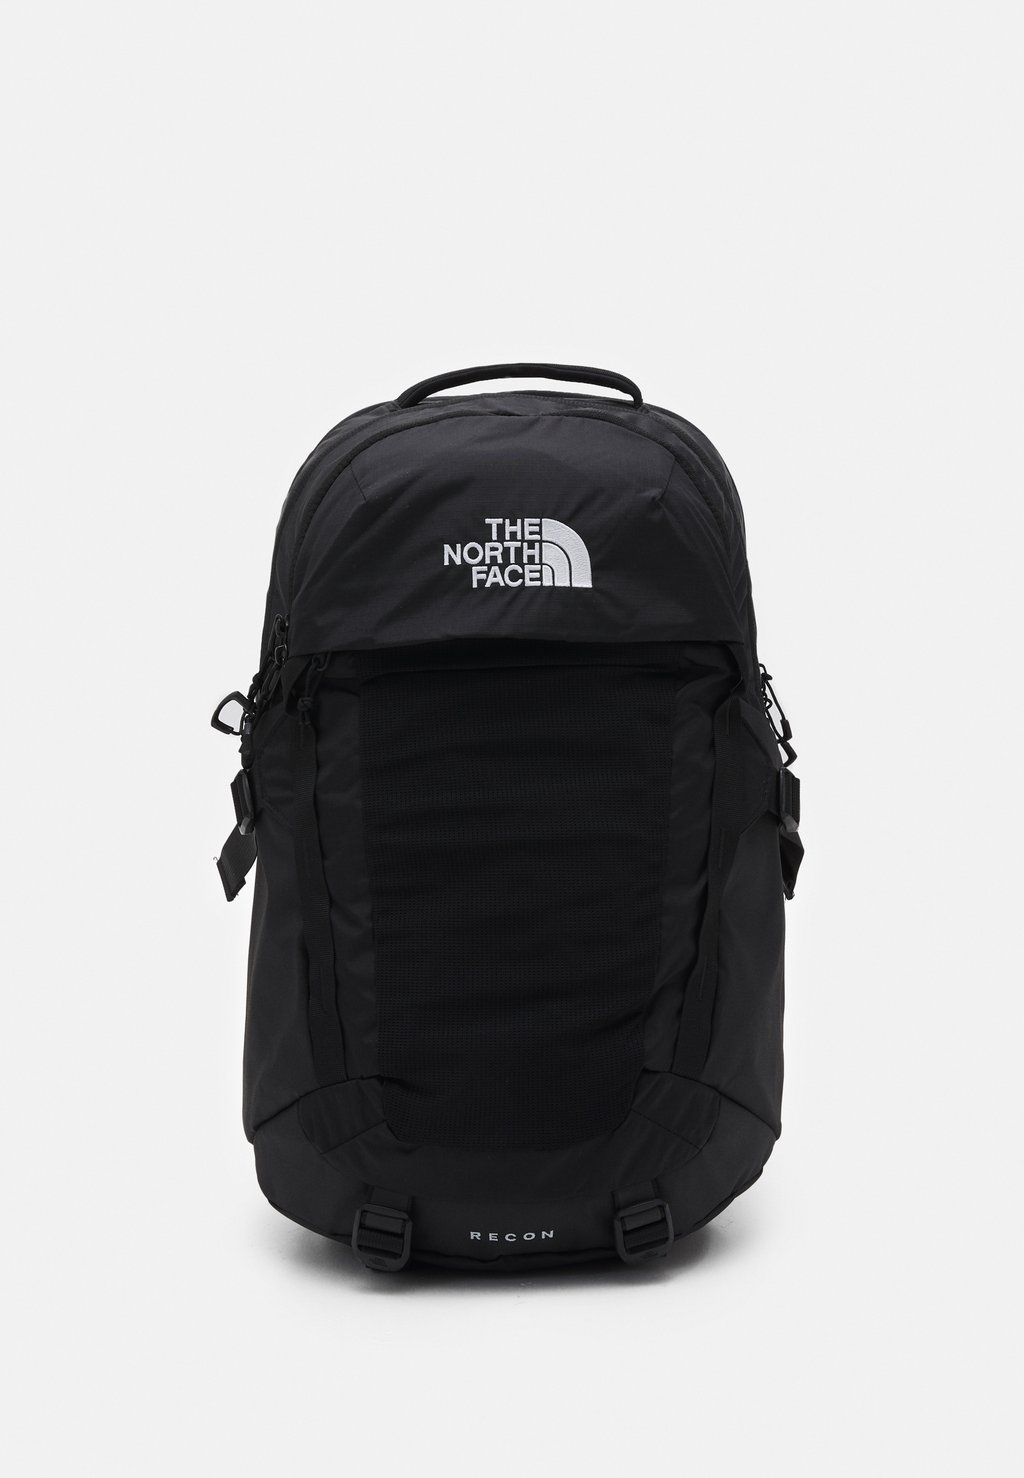 Рюкзак для путешествий The North Face Recon Unisex, чёрный